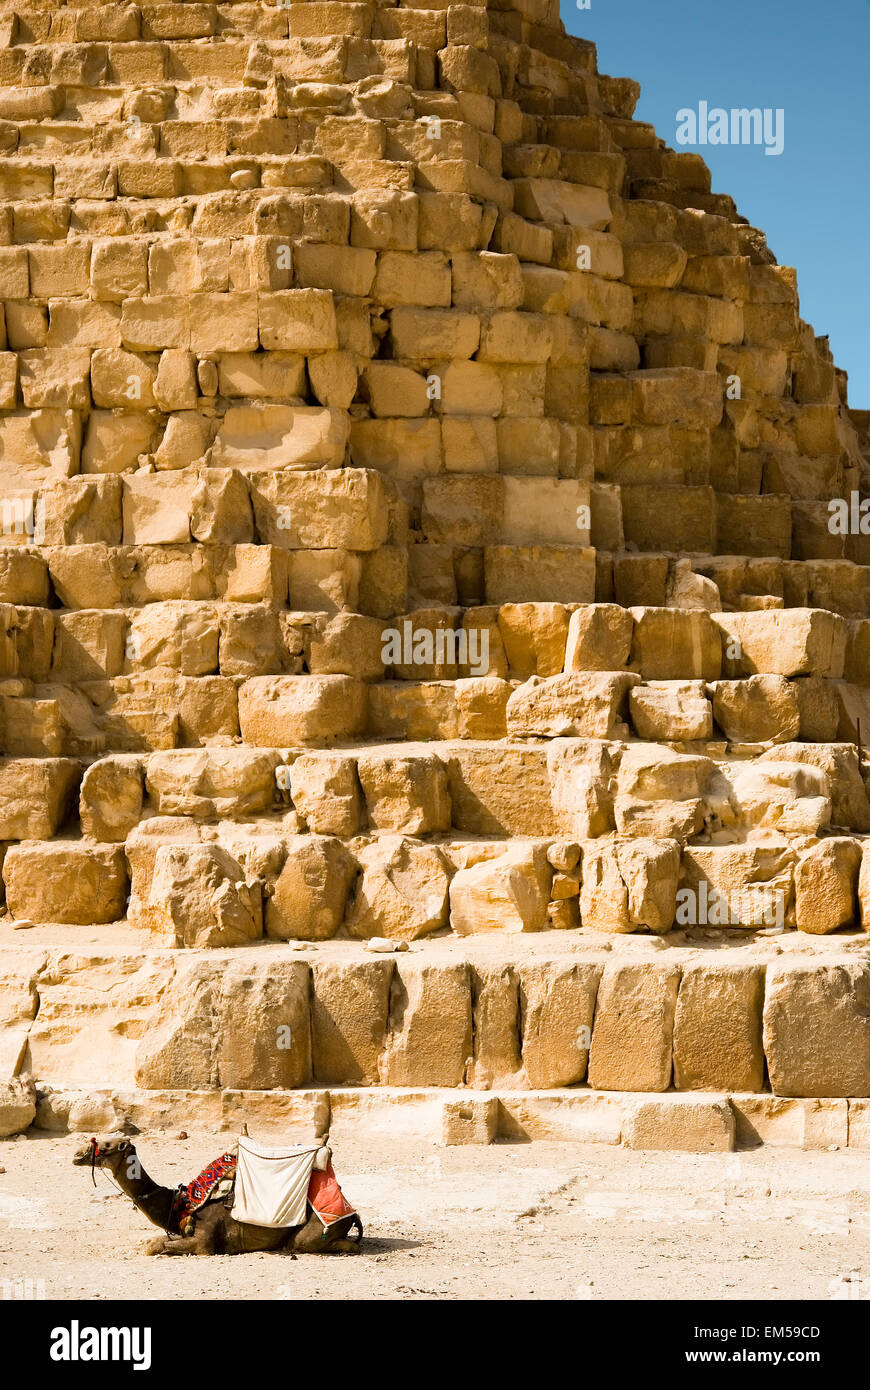 Camello en el fondo de las pirámides de Egipto Foto de stock